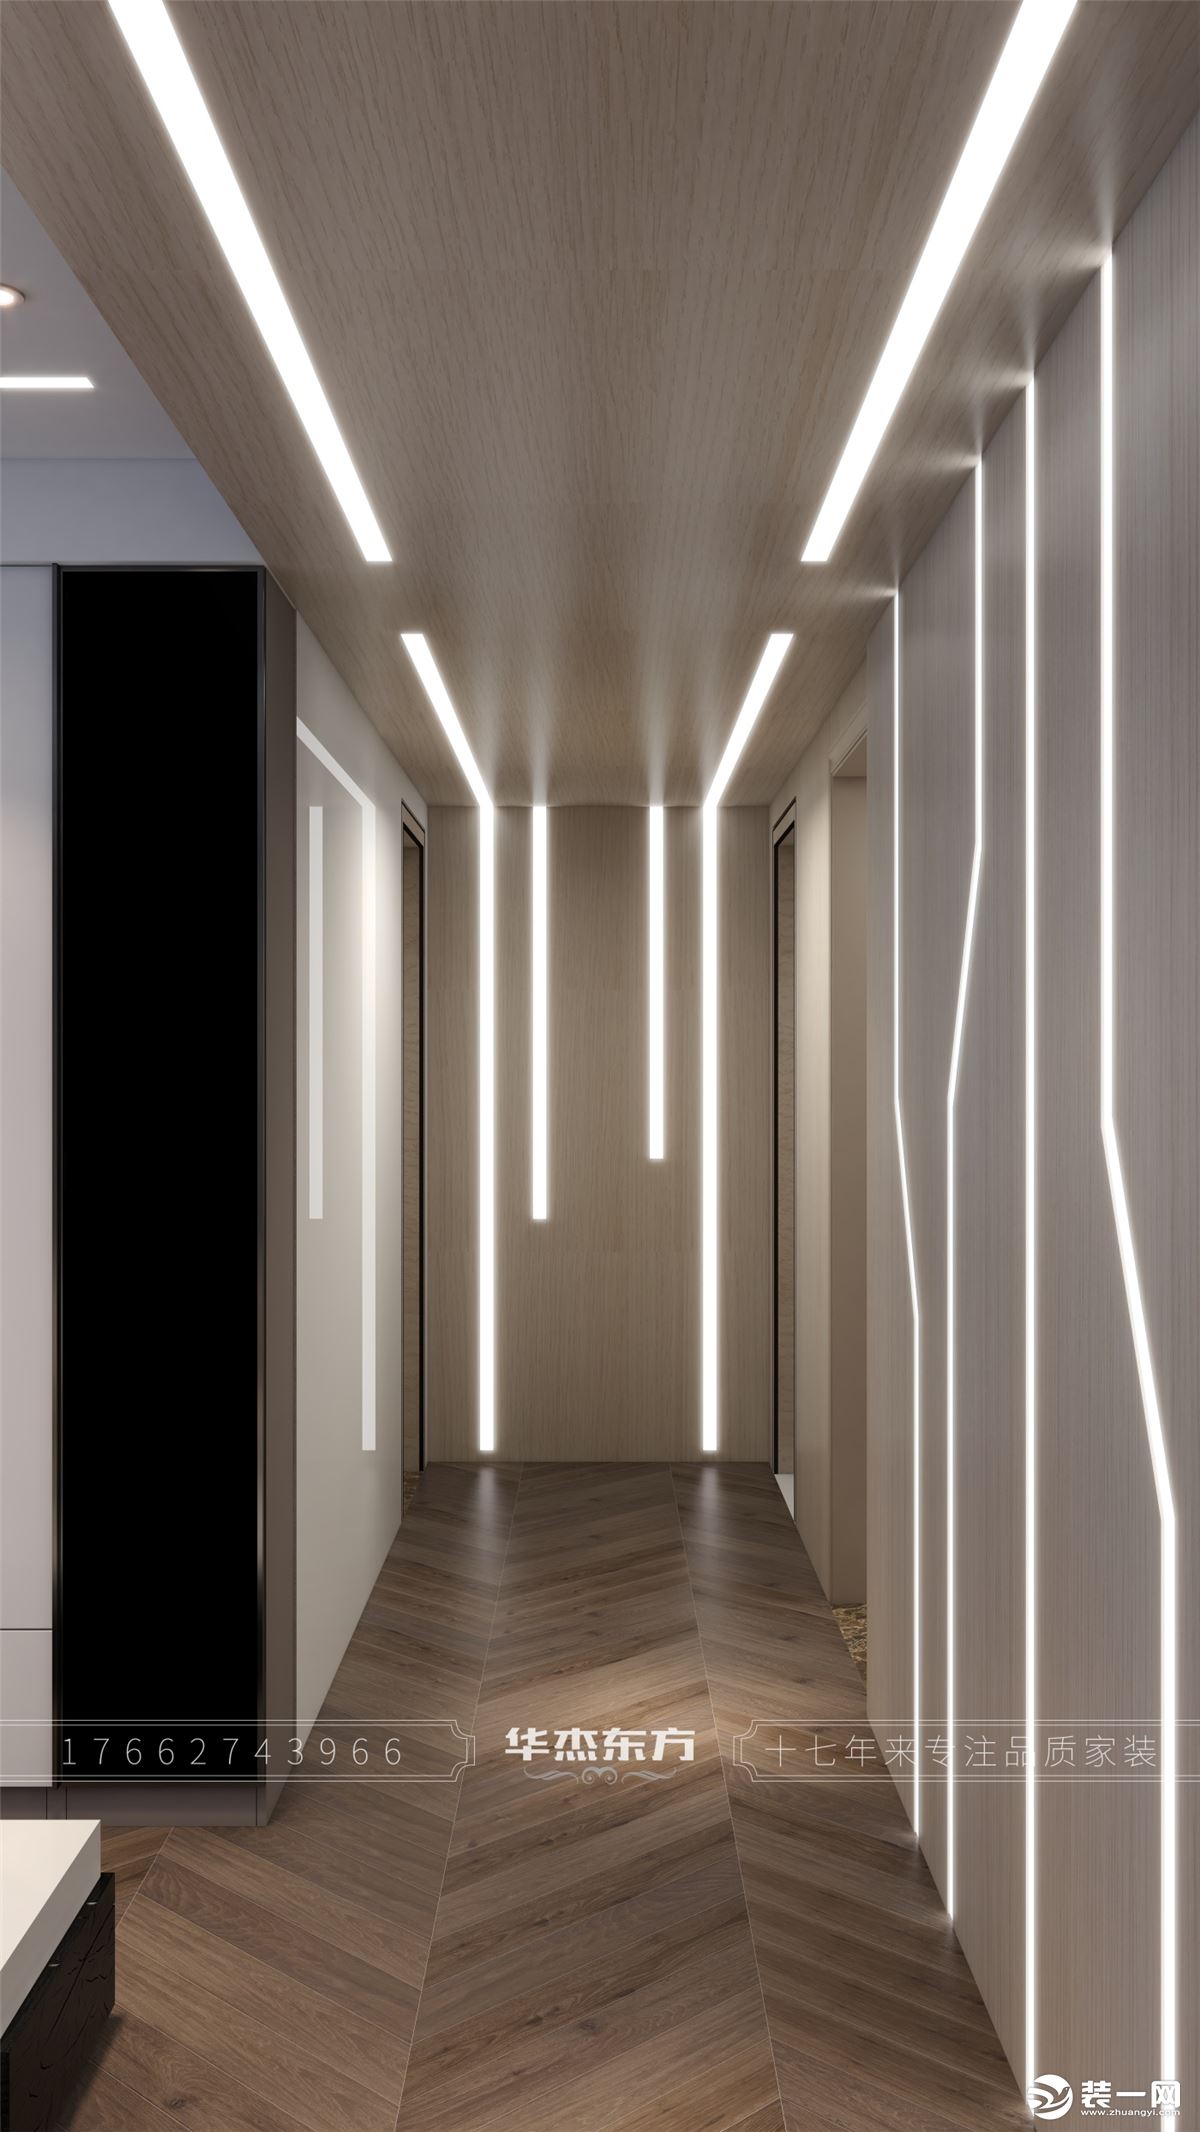 客厅上方及走廊用条形灯使空间更有层次感